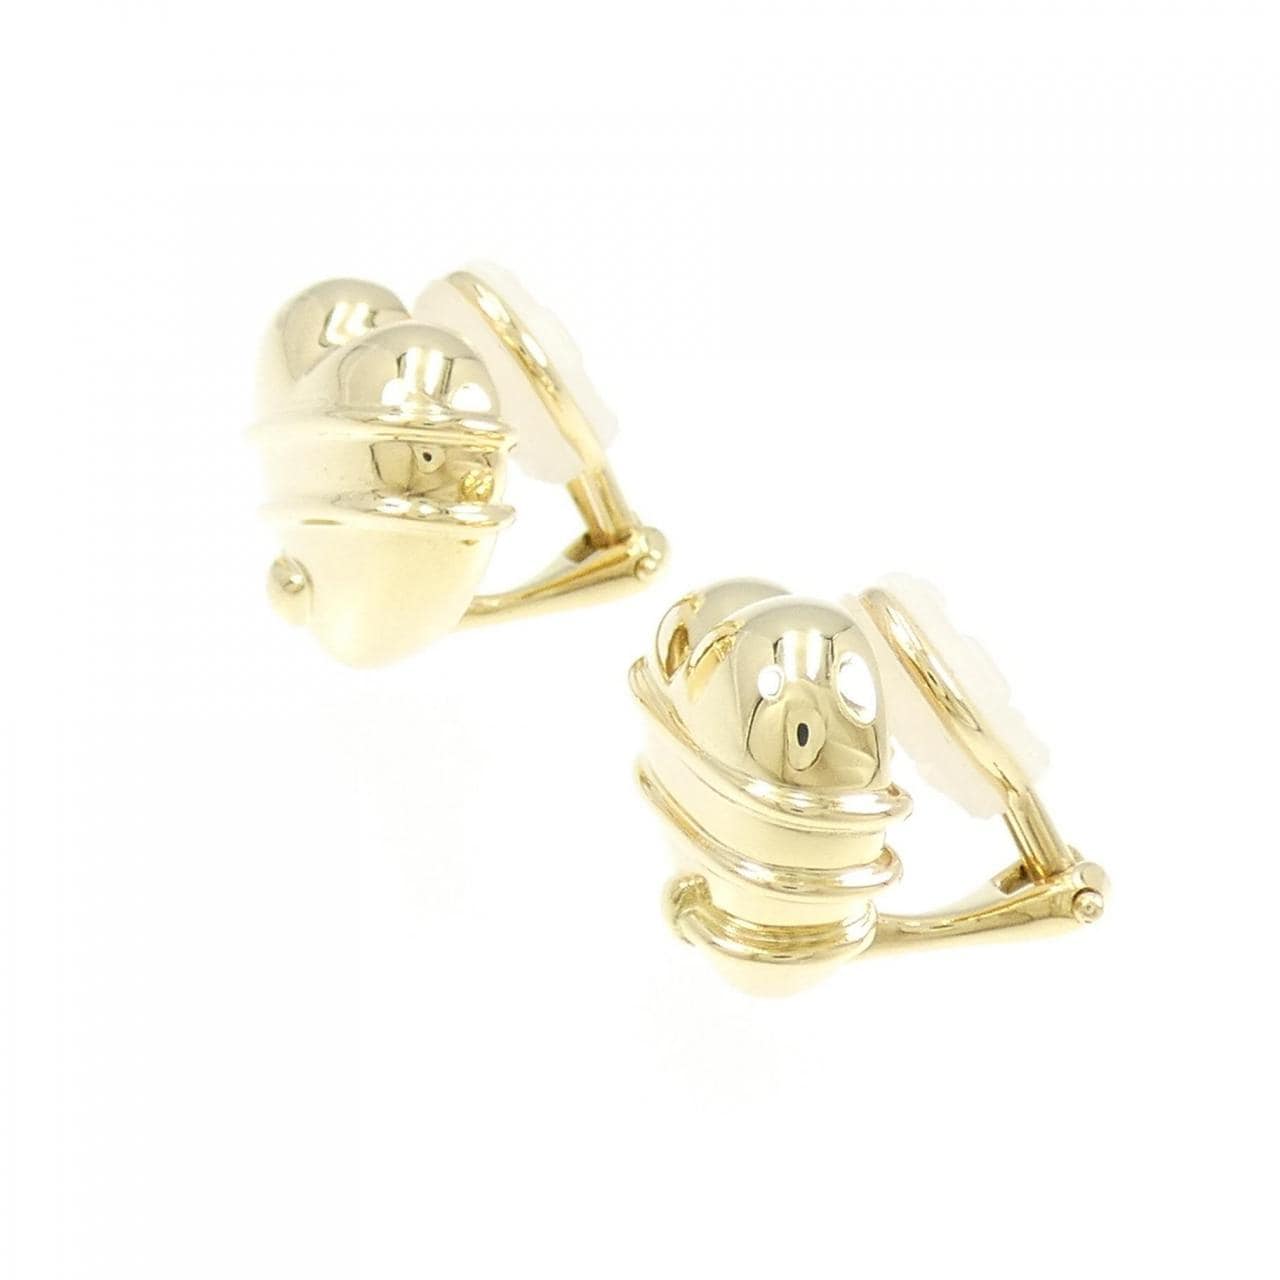 TIFFANY 750YG heart earrings